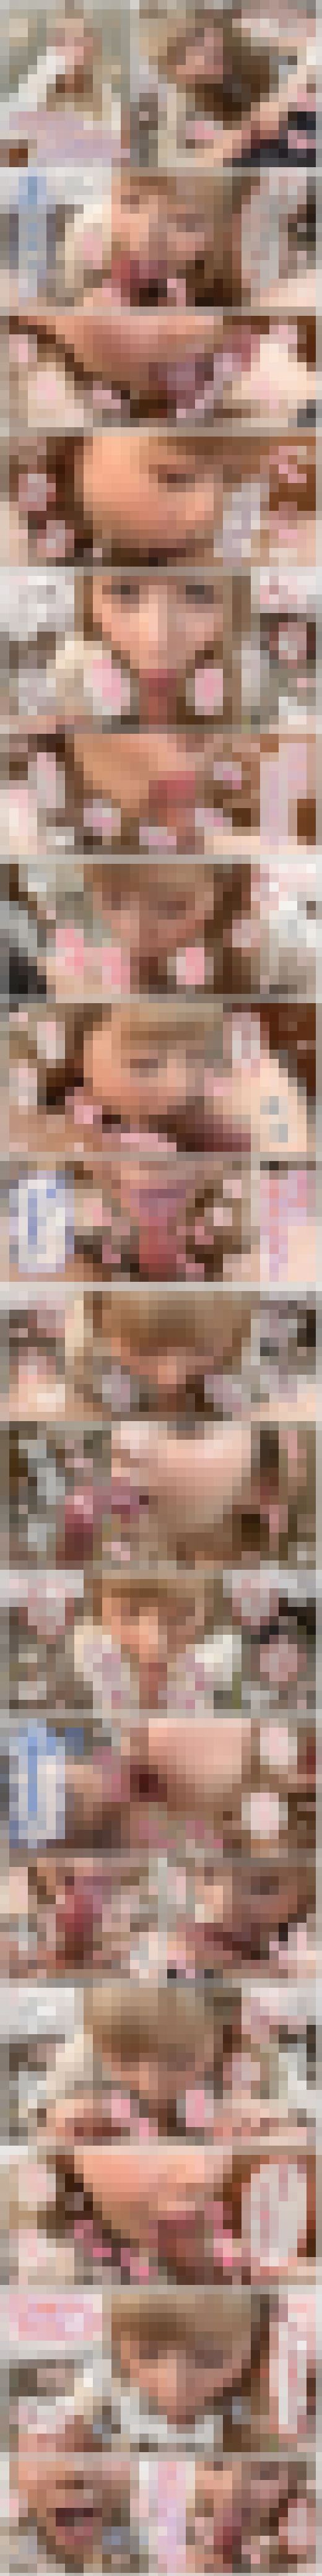 個撮)金髪白ギャル美女れんちゃん&#9825;髪色染めてエロさも倍増↑↑バキュームと舌使いがえちえちすぎるノーハンドフェラで一番　サンプル画像2